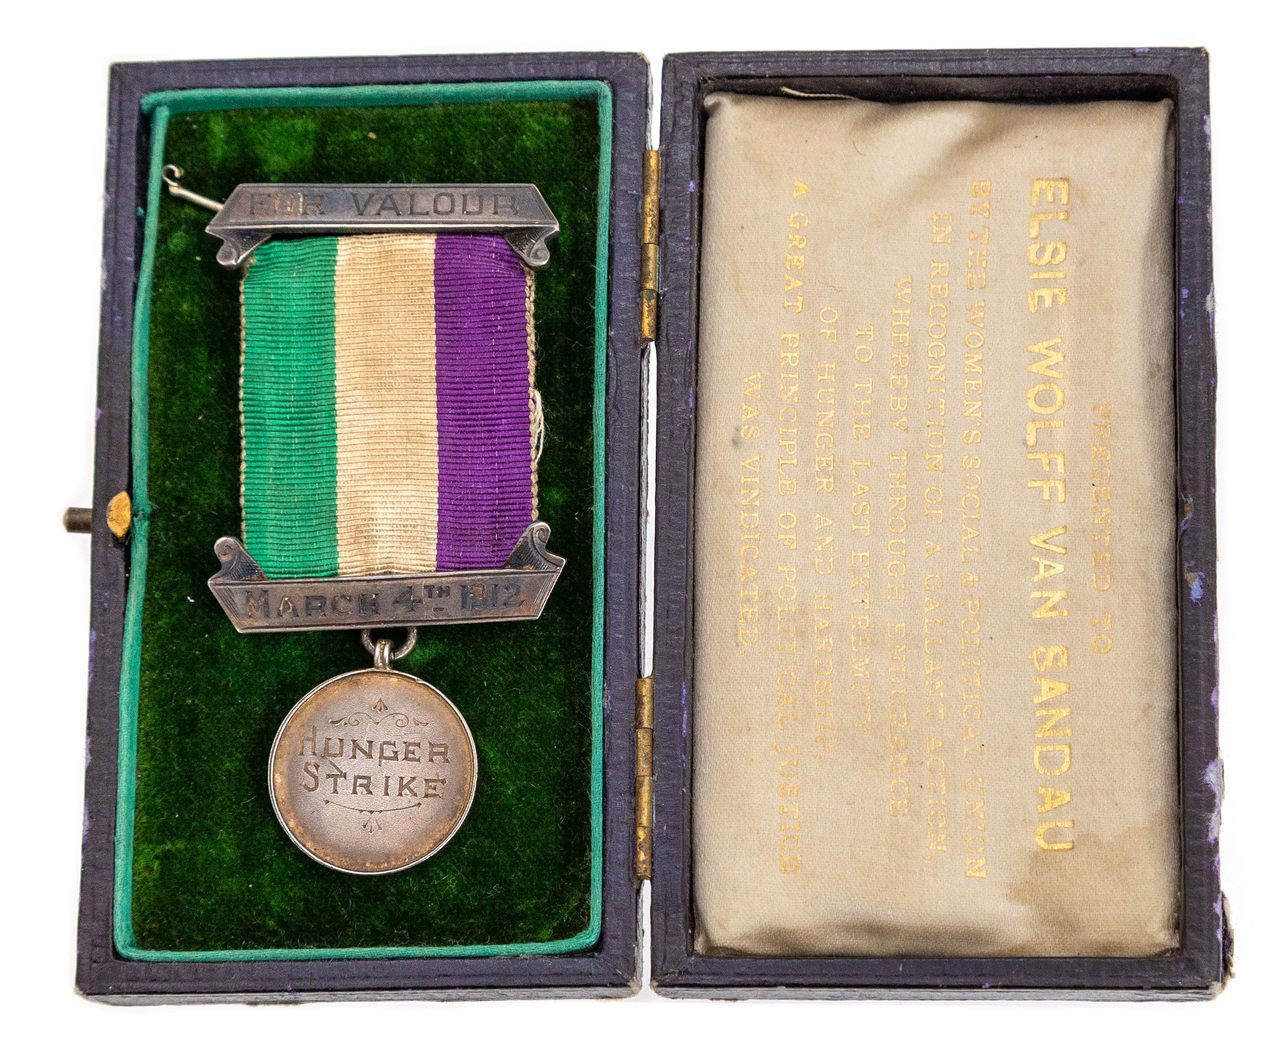 Elsie Wolff Van Sandau's medal in its original case, as it was found in the drawer.